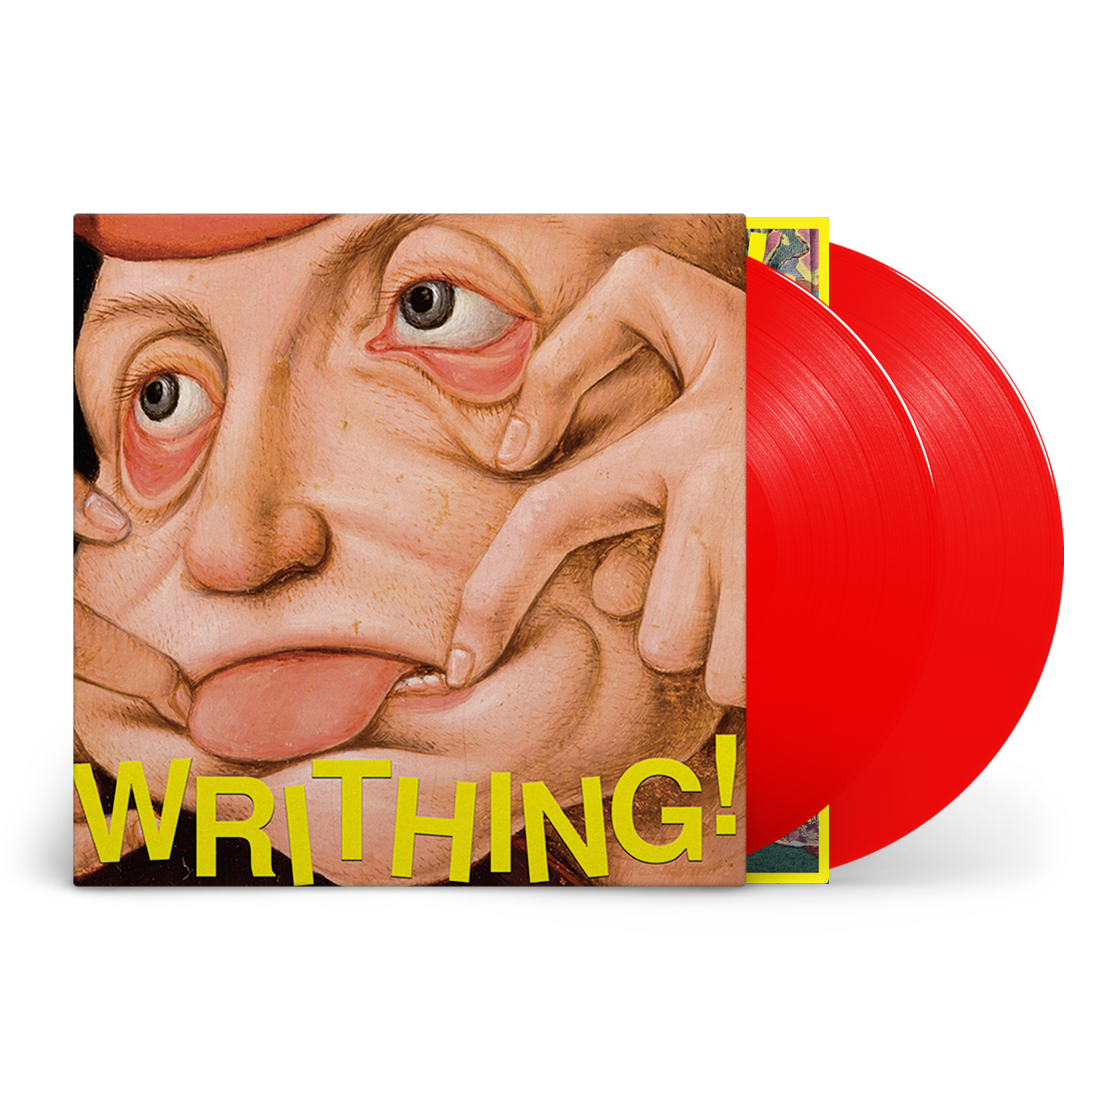 WRITHING!: Valentine Red Vinyl 2LP